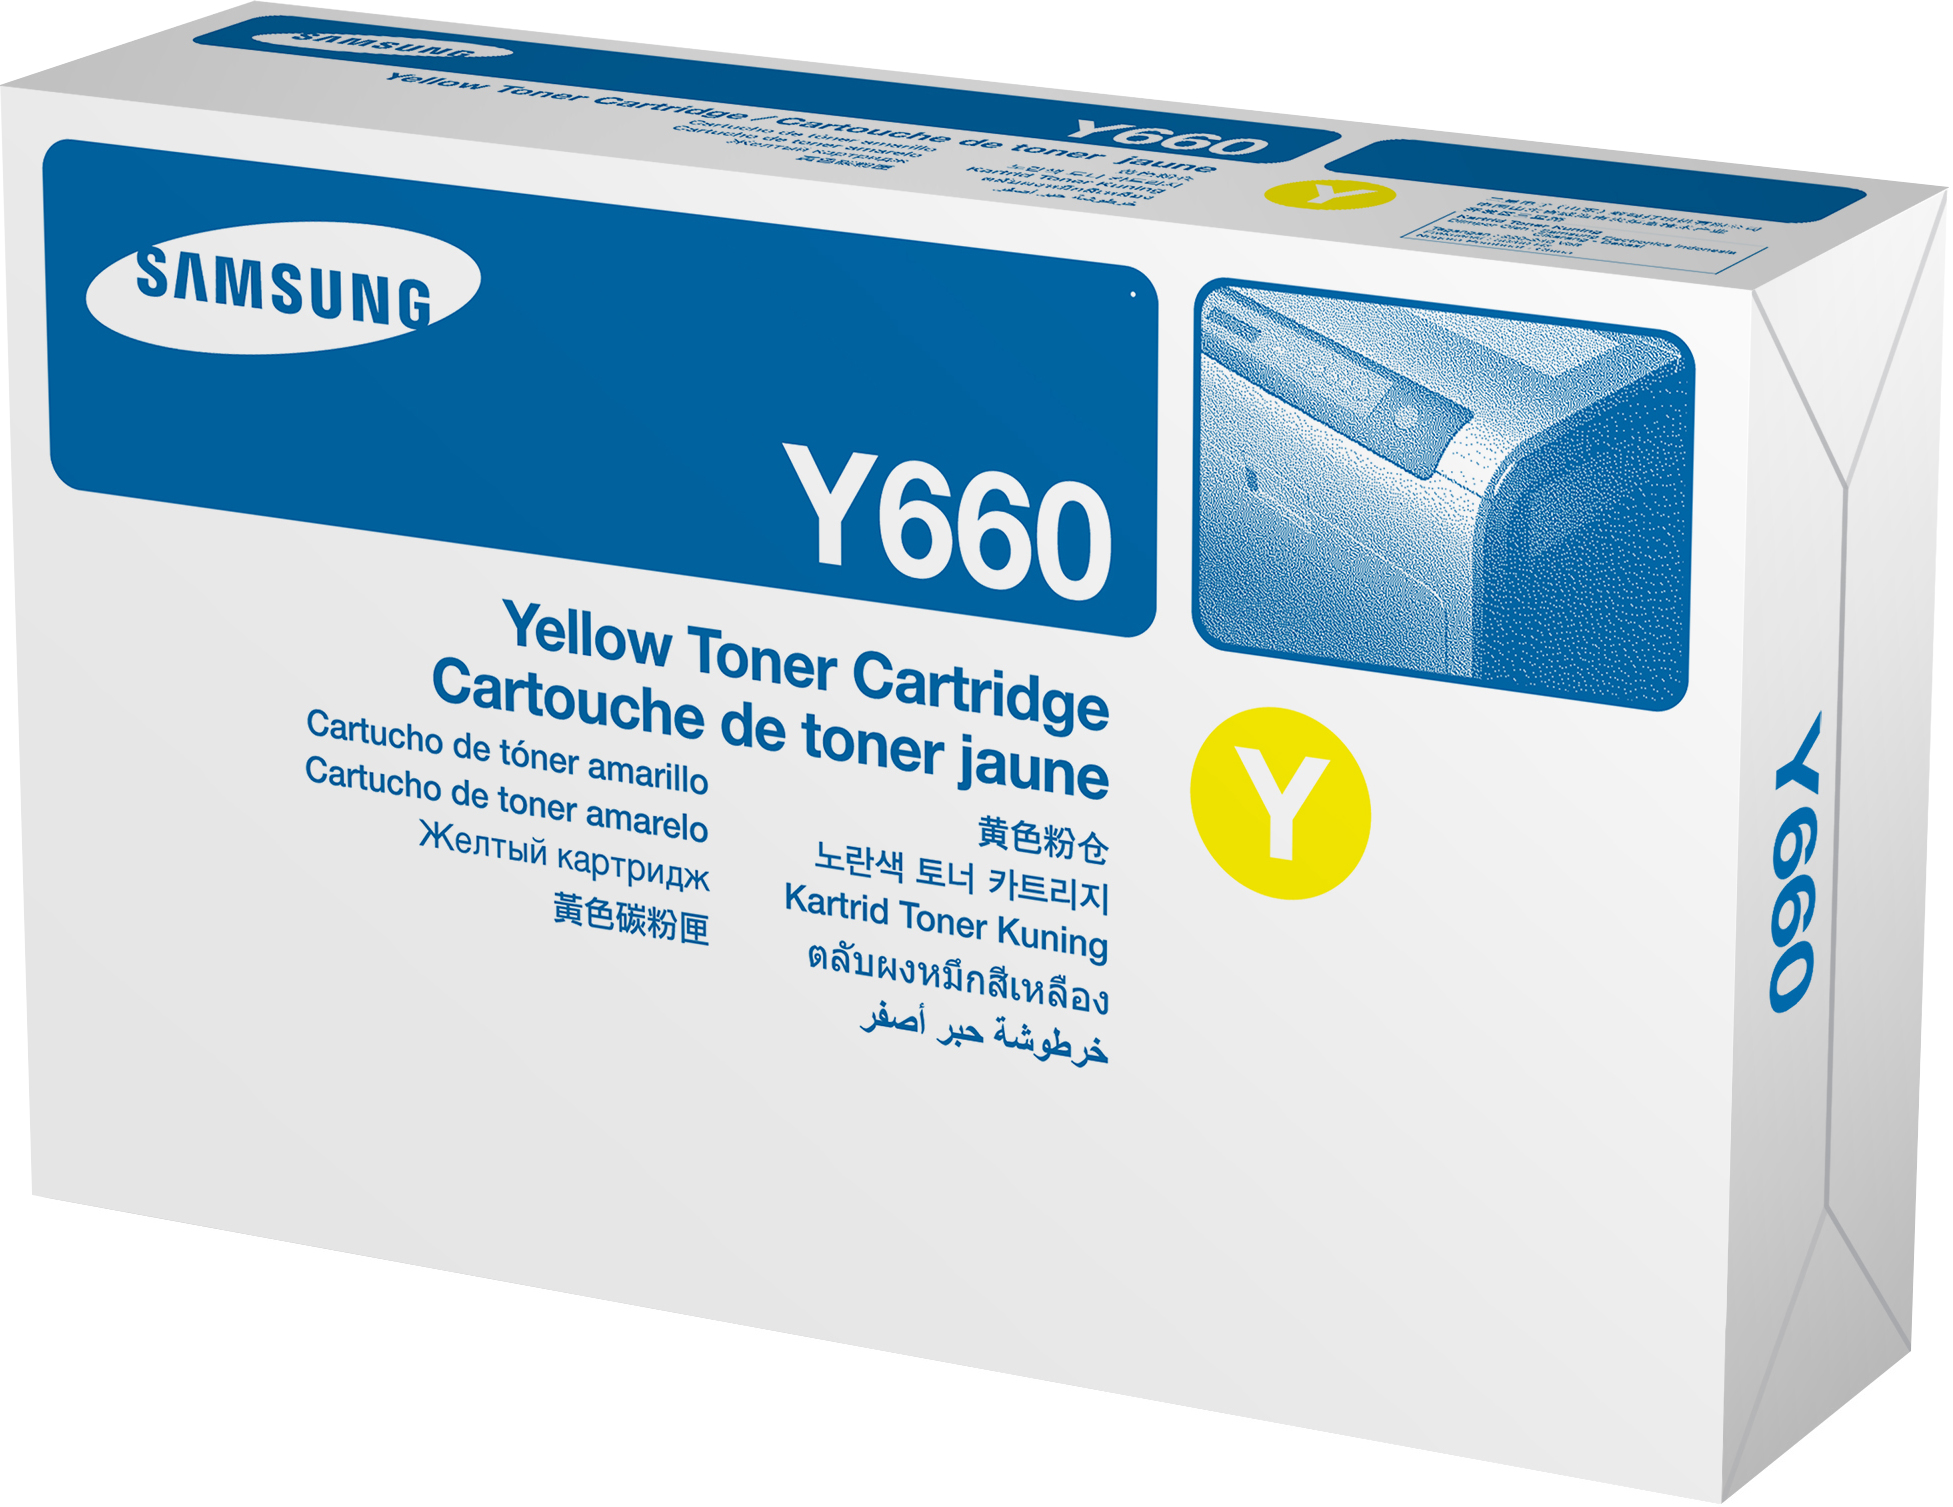 Bild von HP Samsung CLP-Y660A Gelb Tonerkartusche, 2500 Seiten, Gelb, 1 Stück(e)